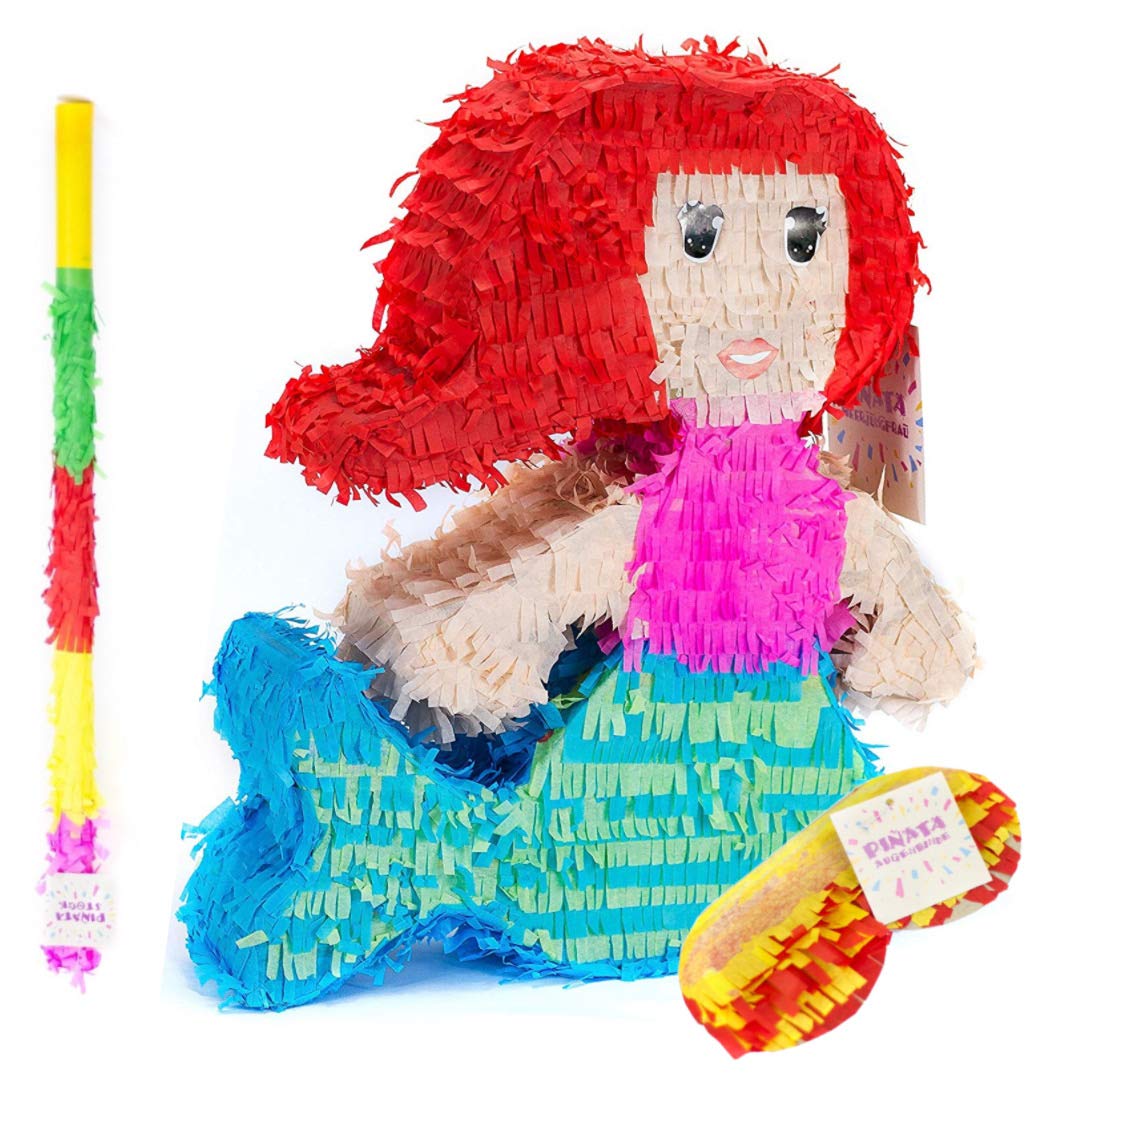 Trendario Meerjungfrau Pinata Set, Pinjatta + Stab + Augenmaske, Ideal zum Befüllen mit Süßigkeiten und Geschenken - Piñata für Kindergeburtstag Spiel, Geschenkidee, Party, Hochzeit